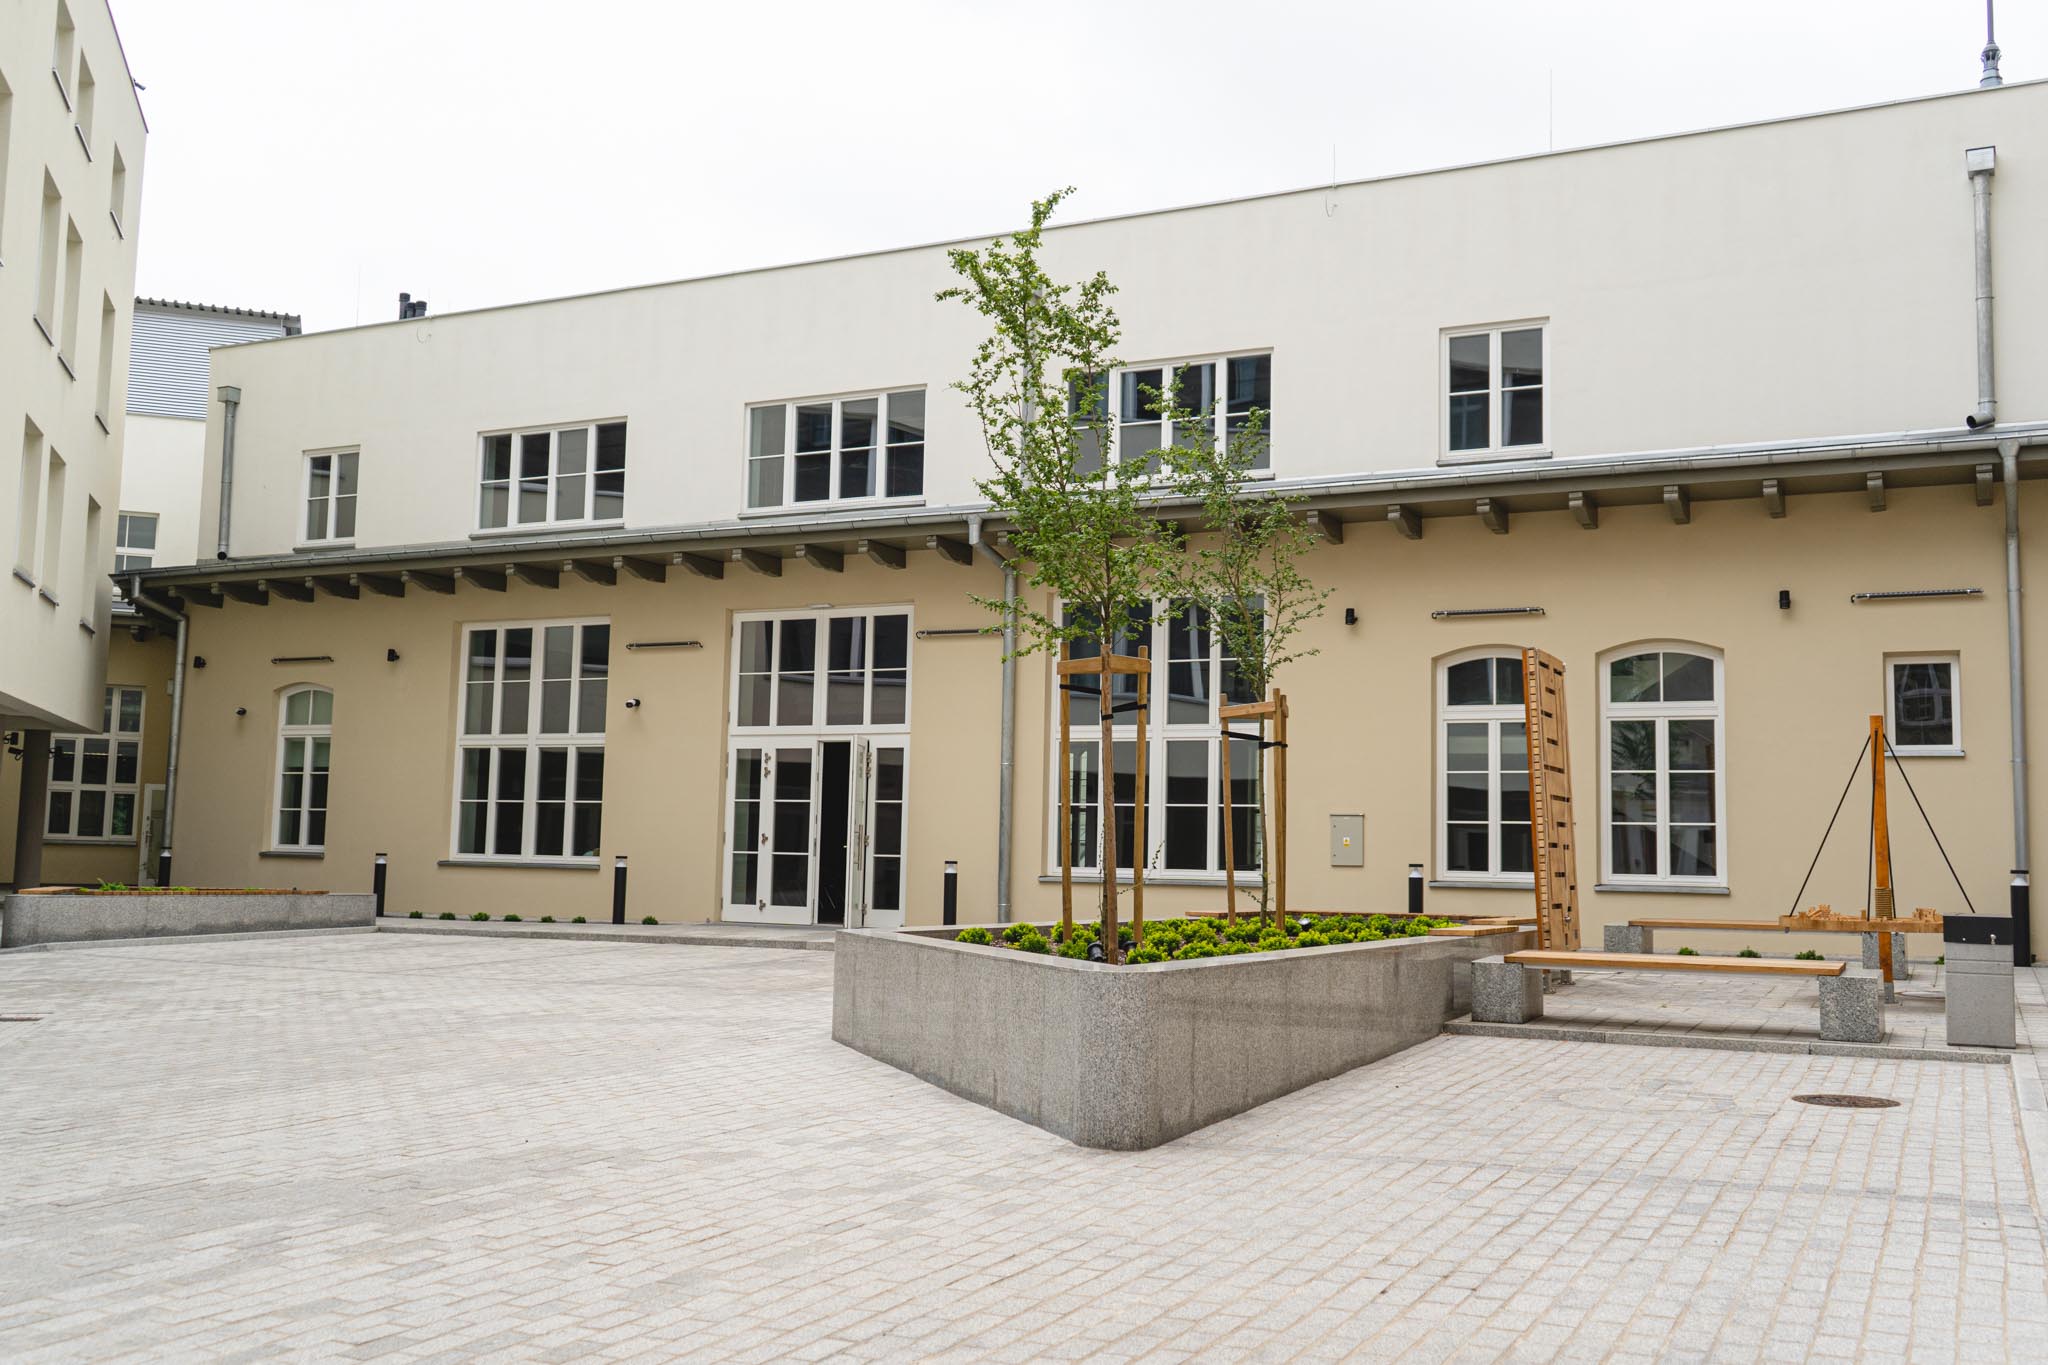 Budynek Muzeum Archeologicznego i Etnograficznego w Łodzi  po modernizacji. Odnowiona elewacja, kostka brukowa oraz gazon z roślinami. 